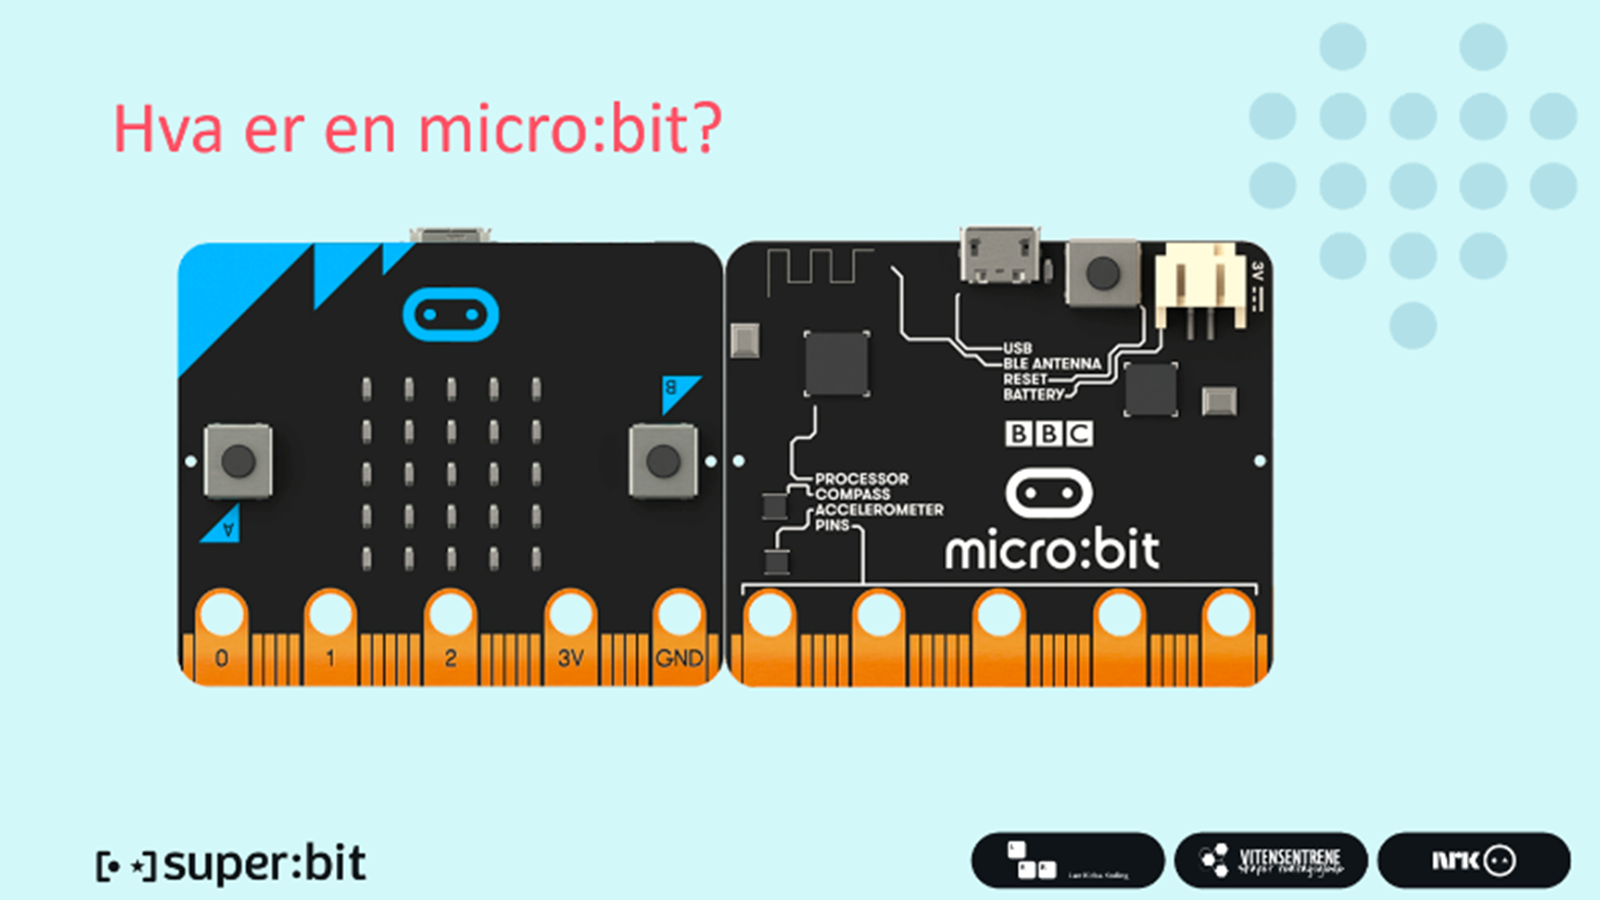 Hva er en microbit? Bilde av en micro:bit